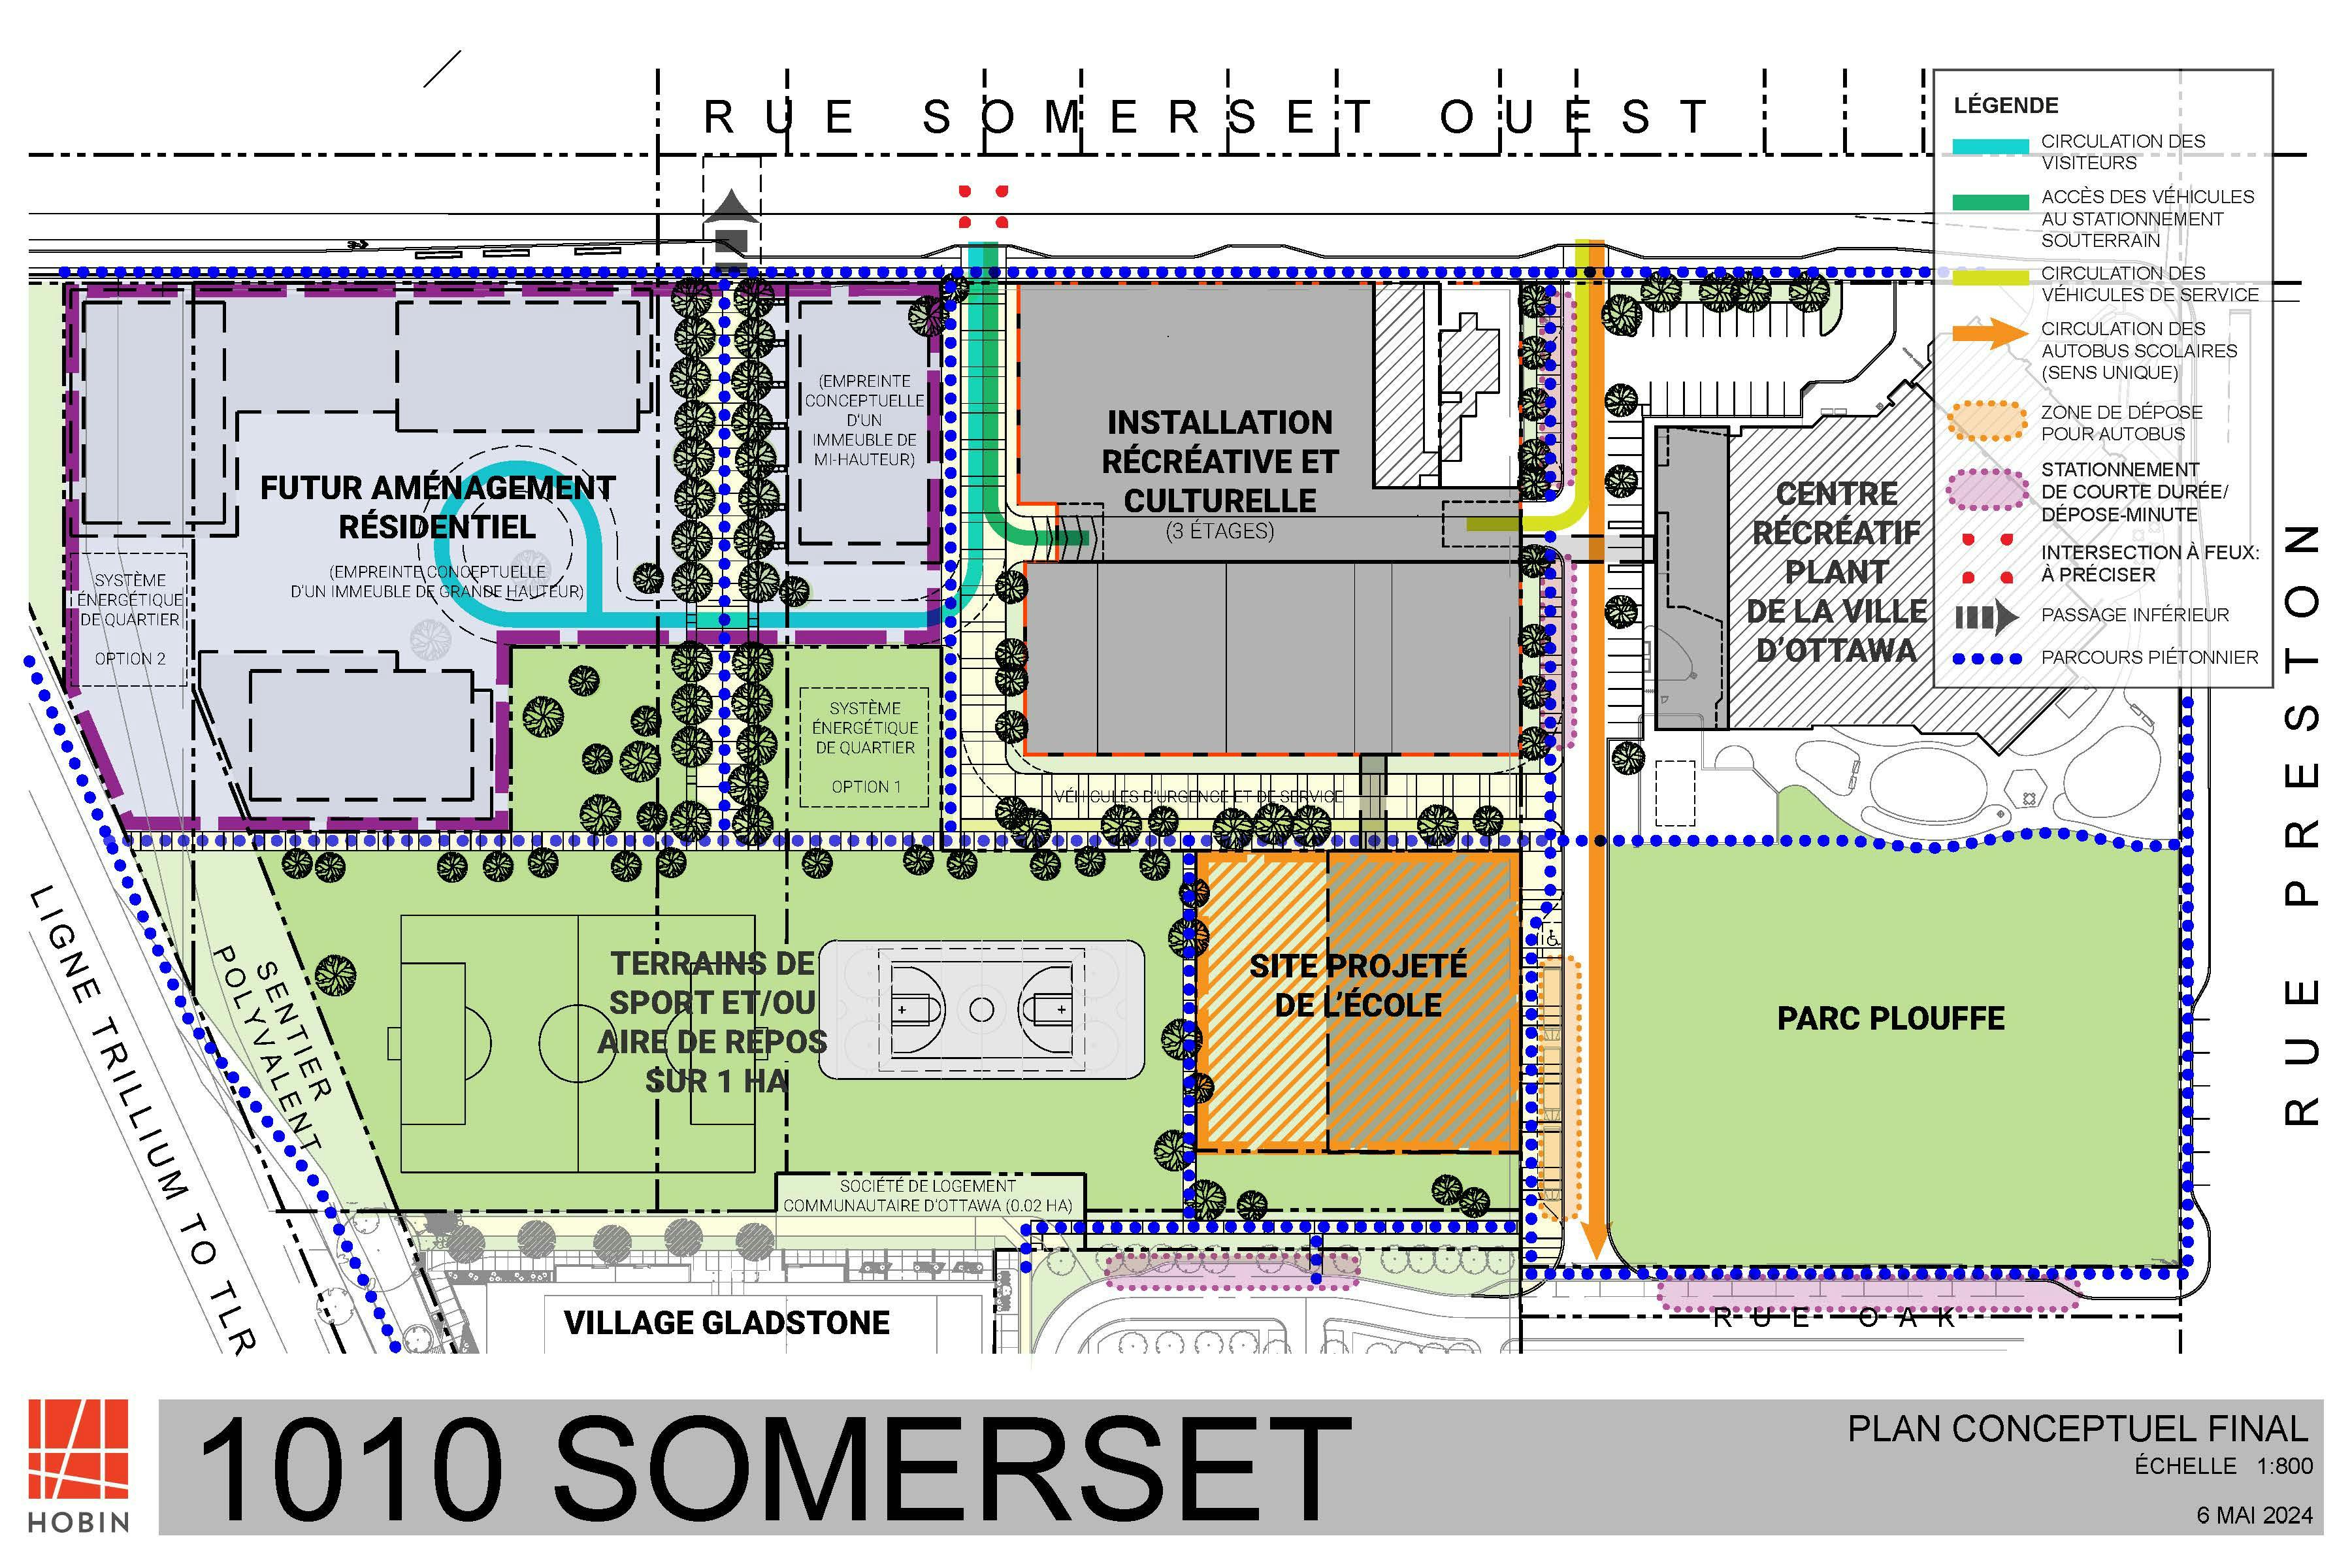 1010 Somerset - plan conceptuel final.jpg